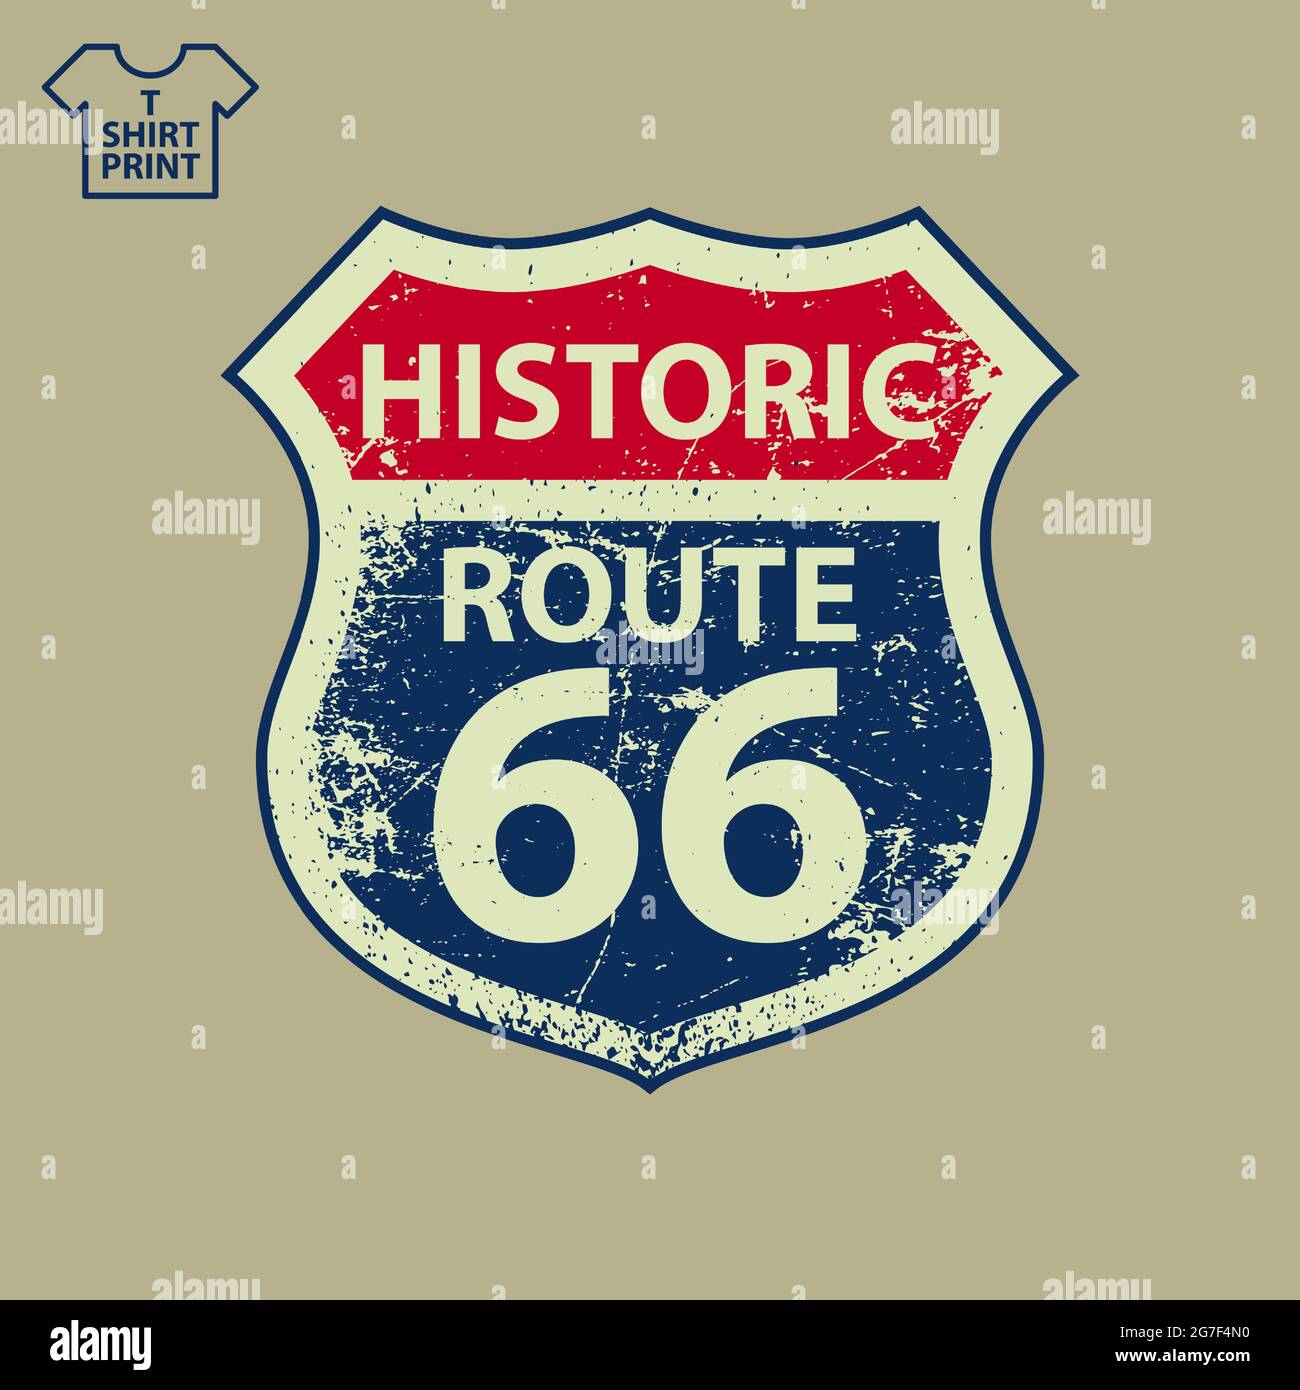 America s Highway 66 Main Street Road Sign in stile Grunge. Insegna Will Rogers Highway per T-shirt, felpa con cappuccio, decorazione. Illustrazione vettoriale. Illustrazione Vettoriale